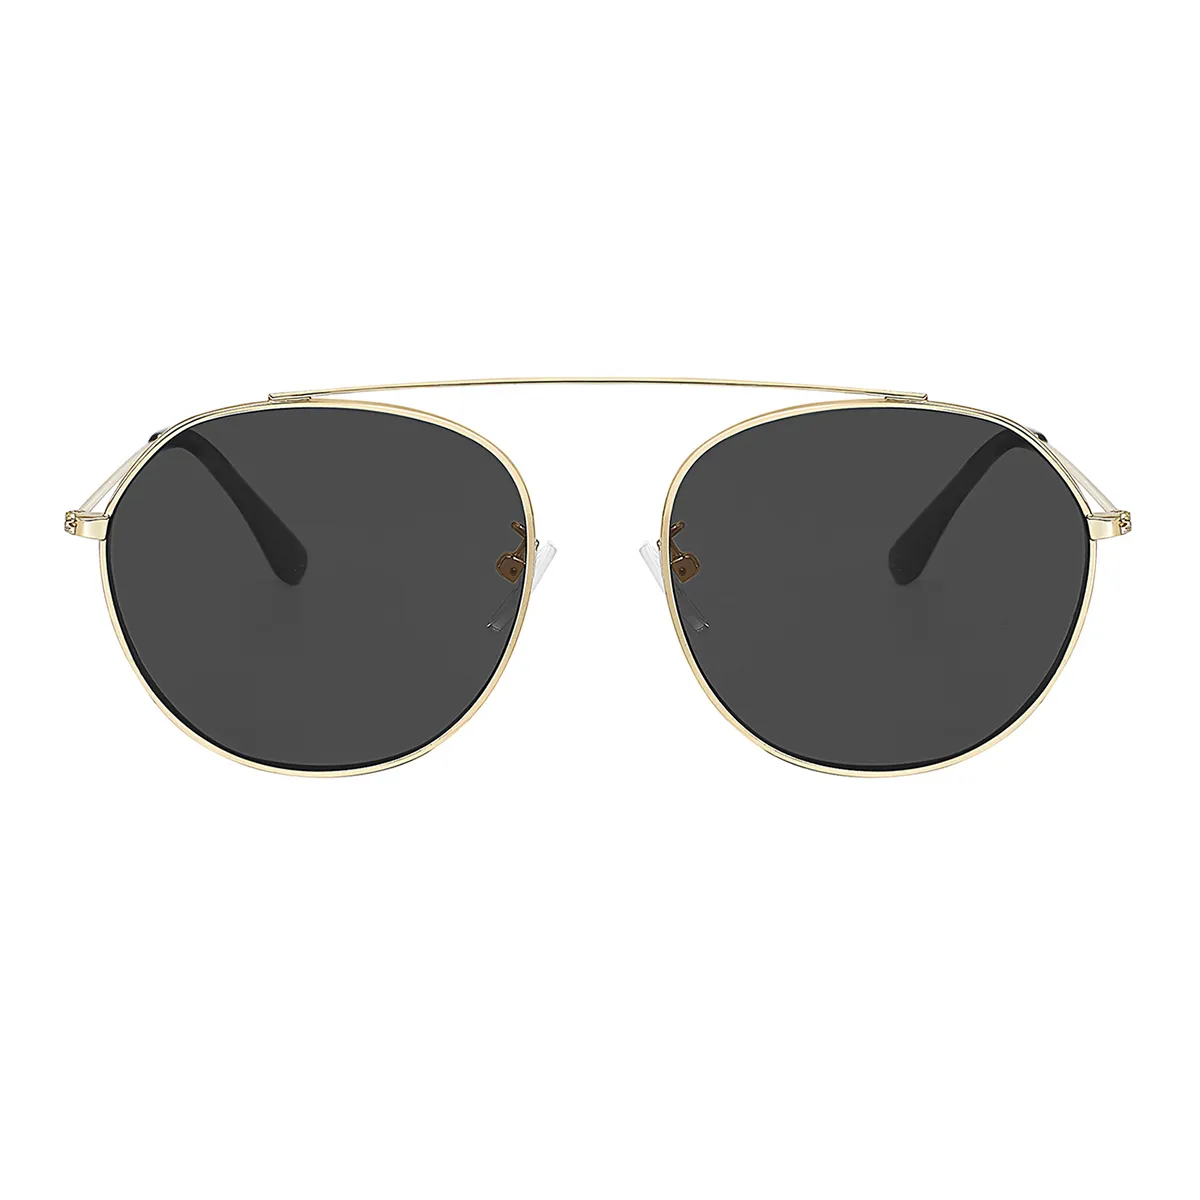 Classic Round Silver  Sunglasses for Women & Men